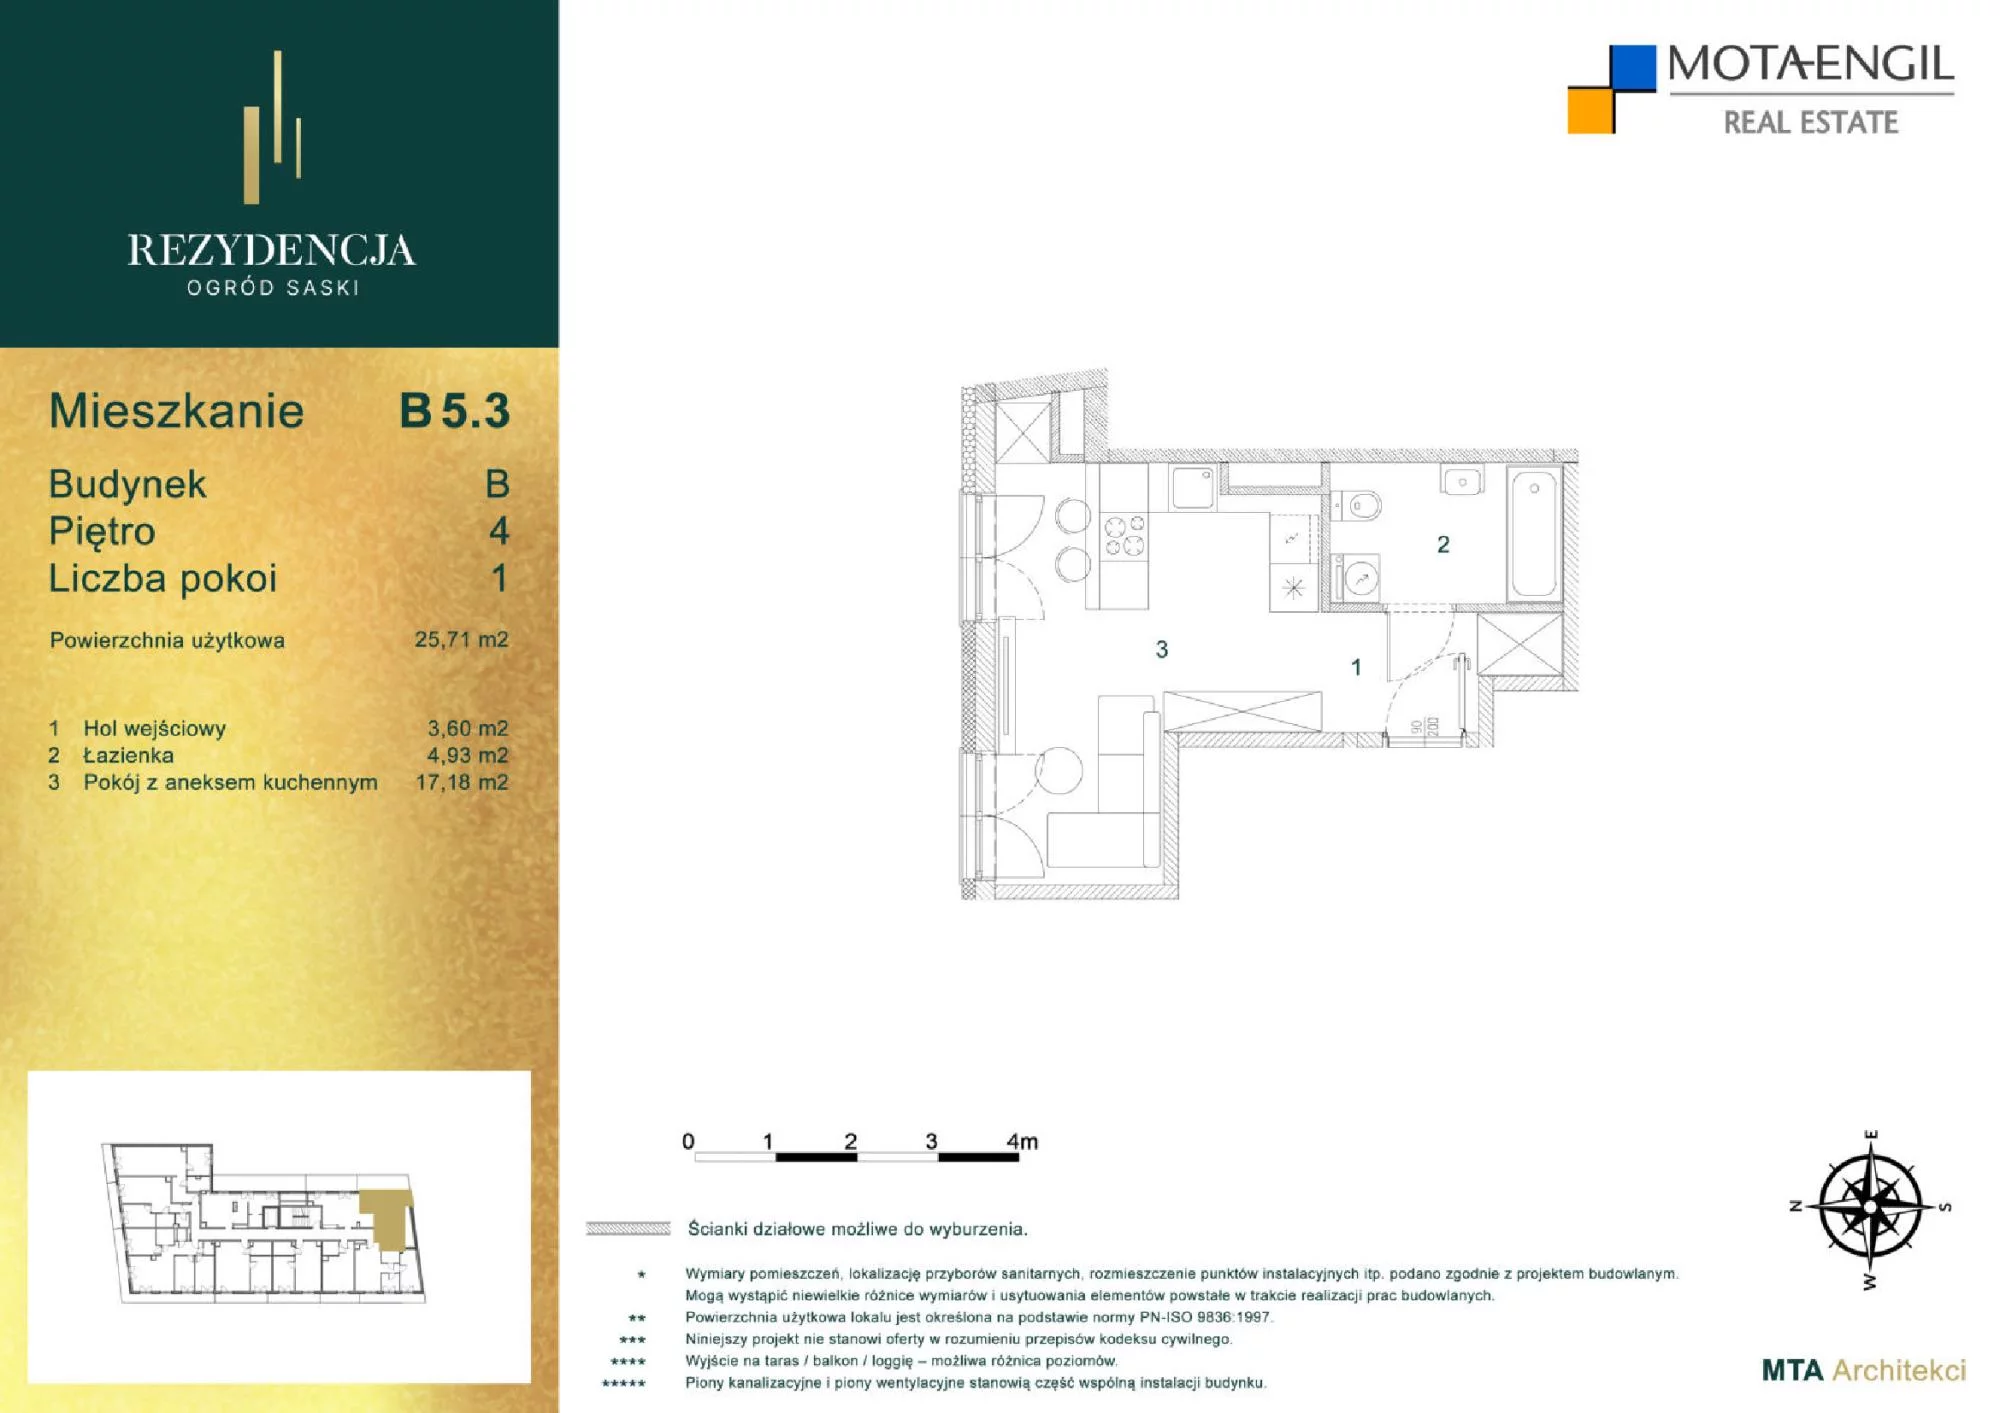 Mieszkanie 25,71 m², piętro 5, oferta nr B5.3, Rezydencja Ogród Saski, Lublin, Wieniawa, ul. Jasna 7, 7A